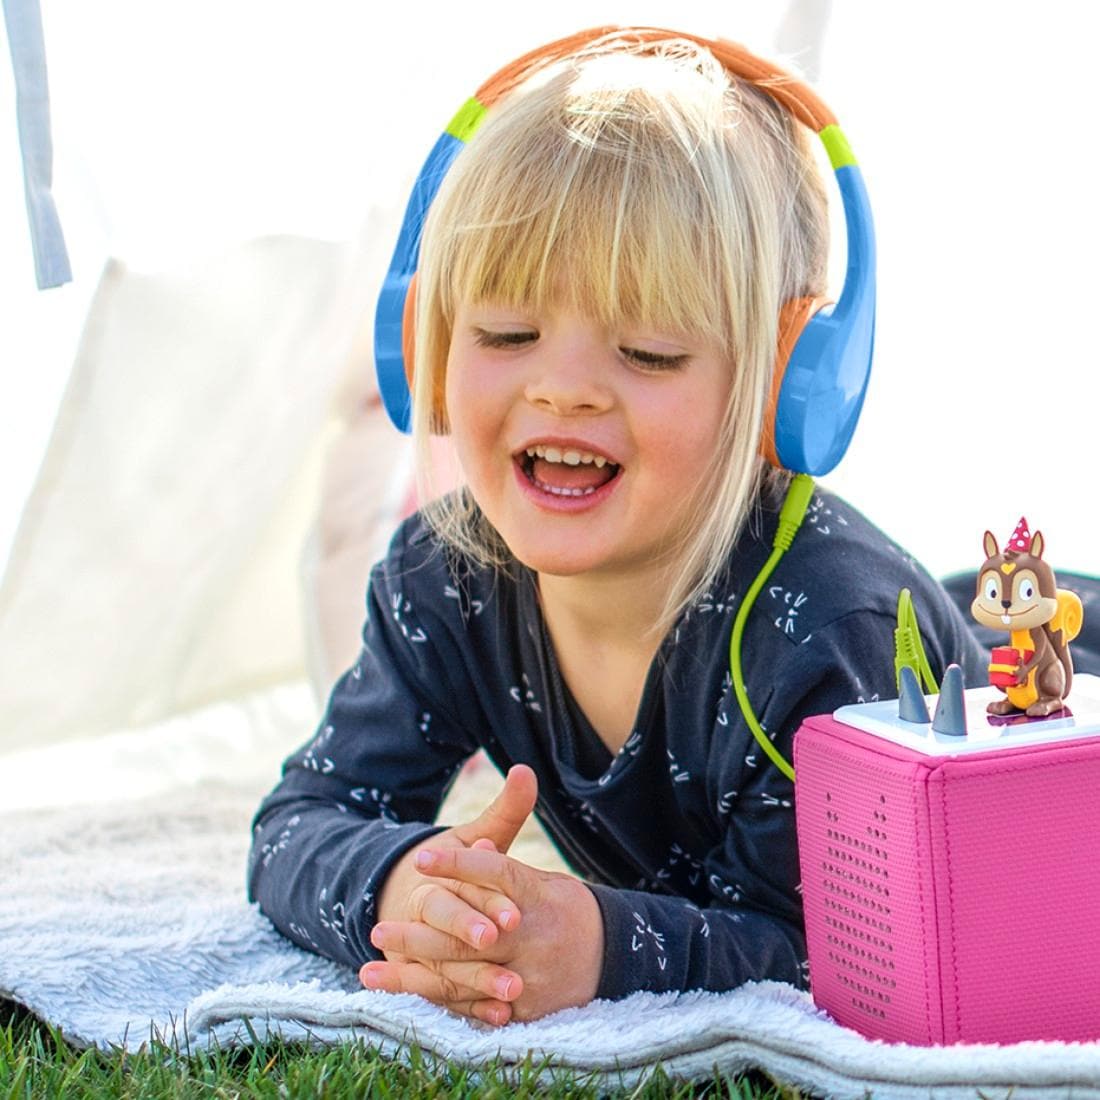 Hama Kinder-Kopfhörer »Kinderkopfhörer mit Kabel (85 dB Lautstärkebegrenzung, On-Ear)«, Sprachsteuerung, Größenverstellbar, Integriertes Mikrofon, Siri und Google Assistant